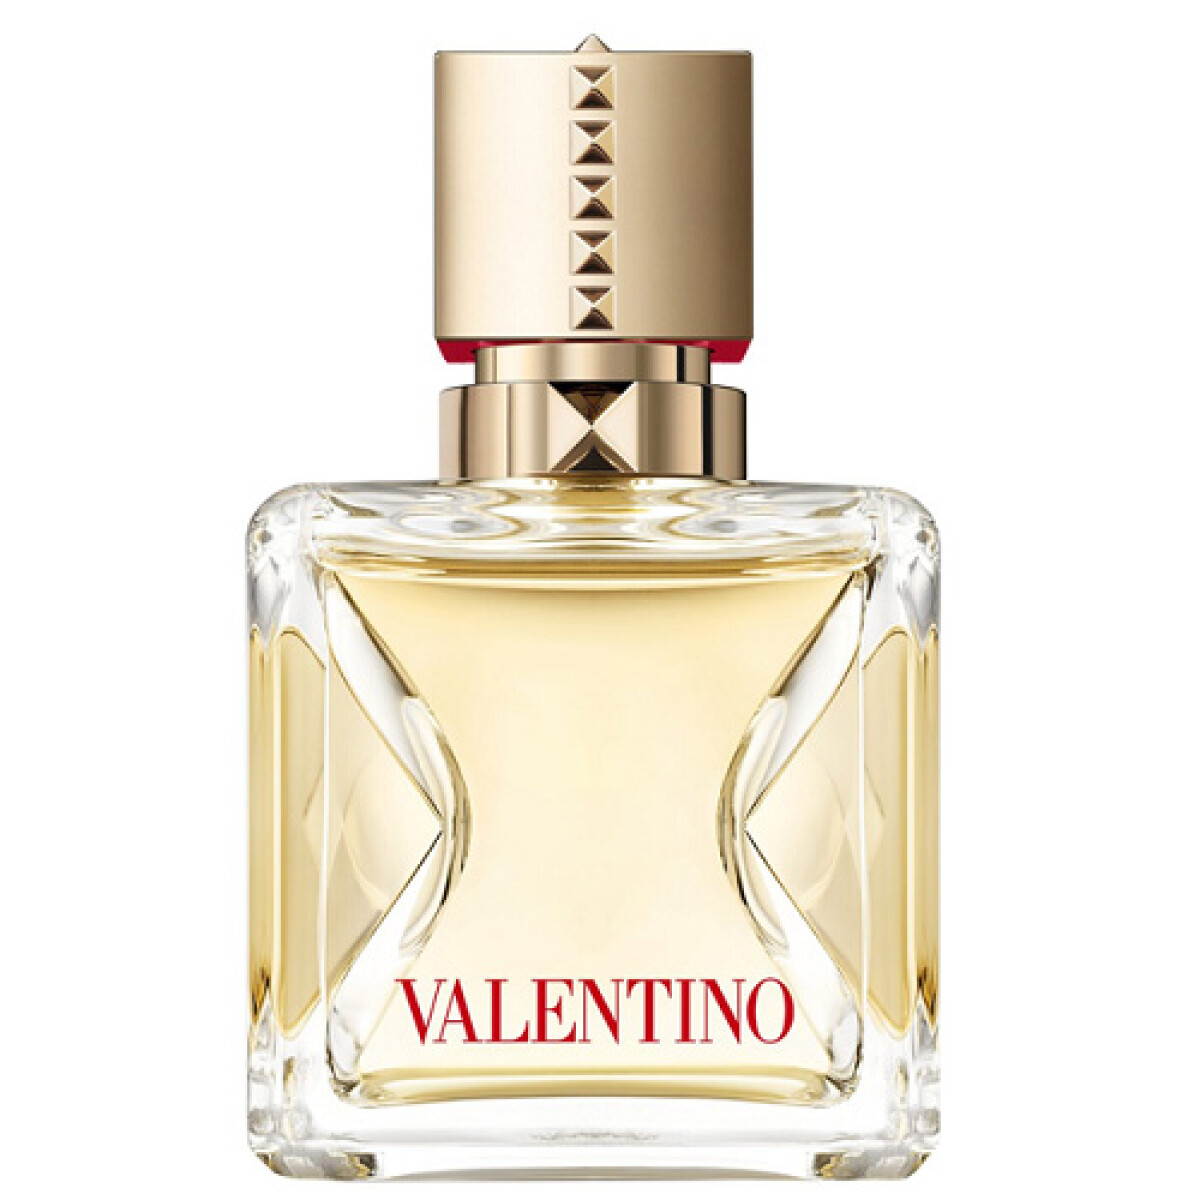 Perfume Valentino Voce Viva Edp 50ml 